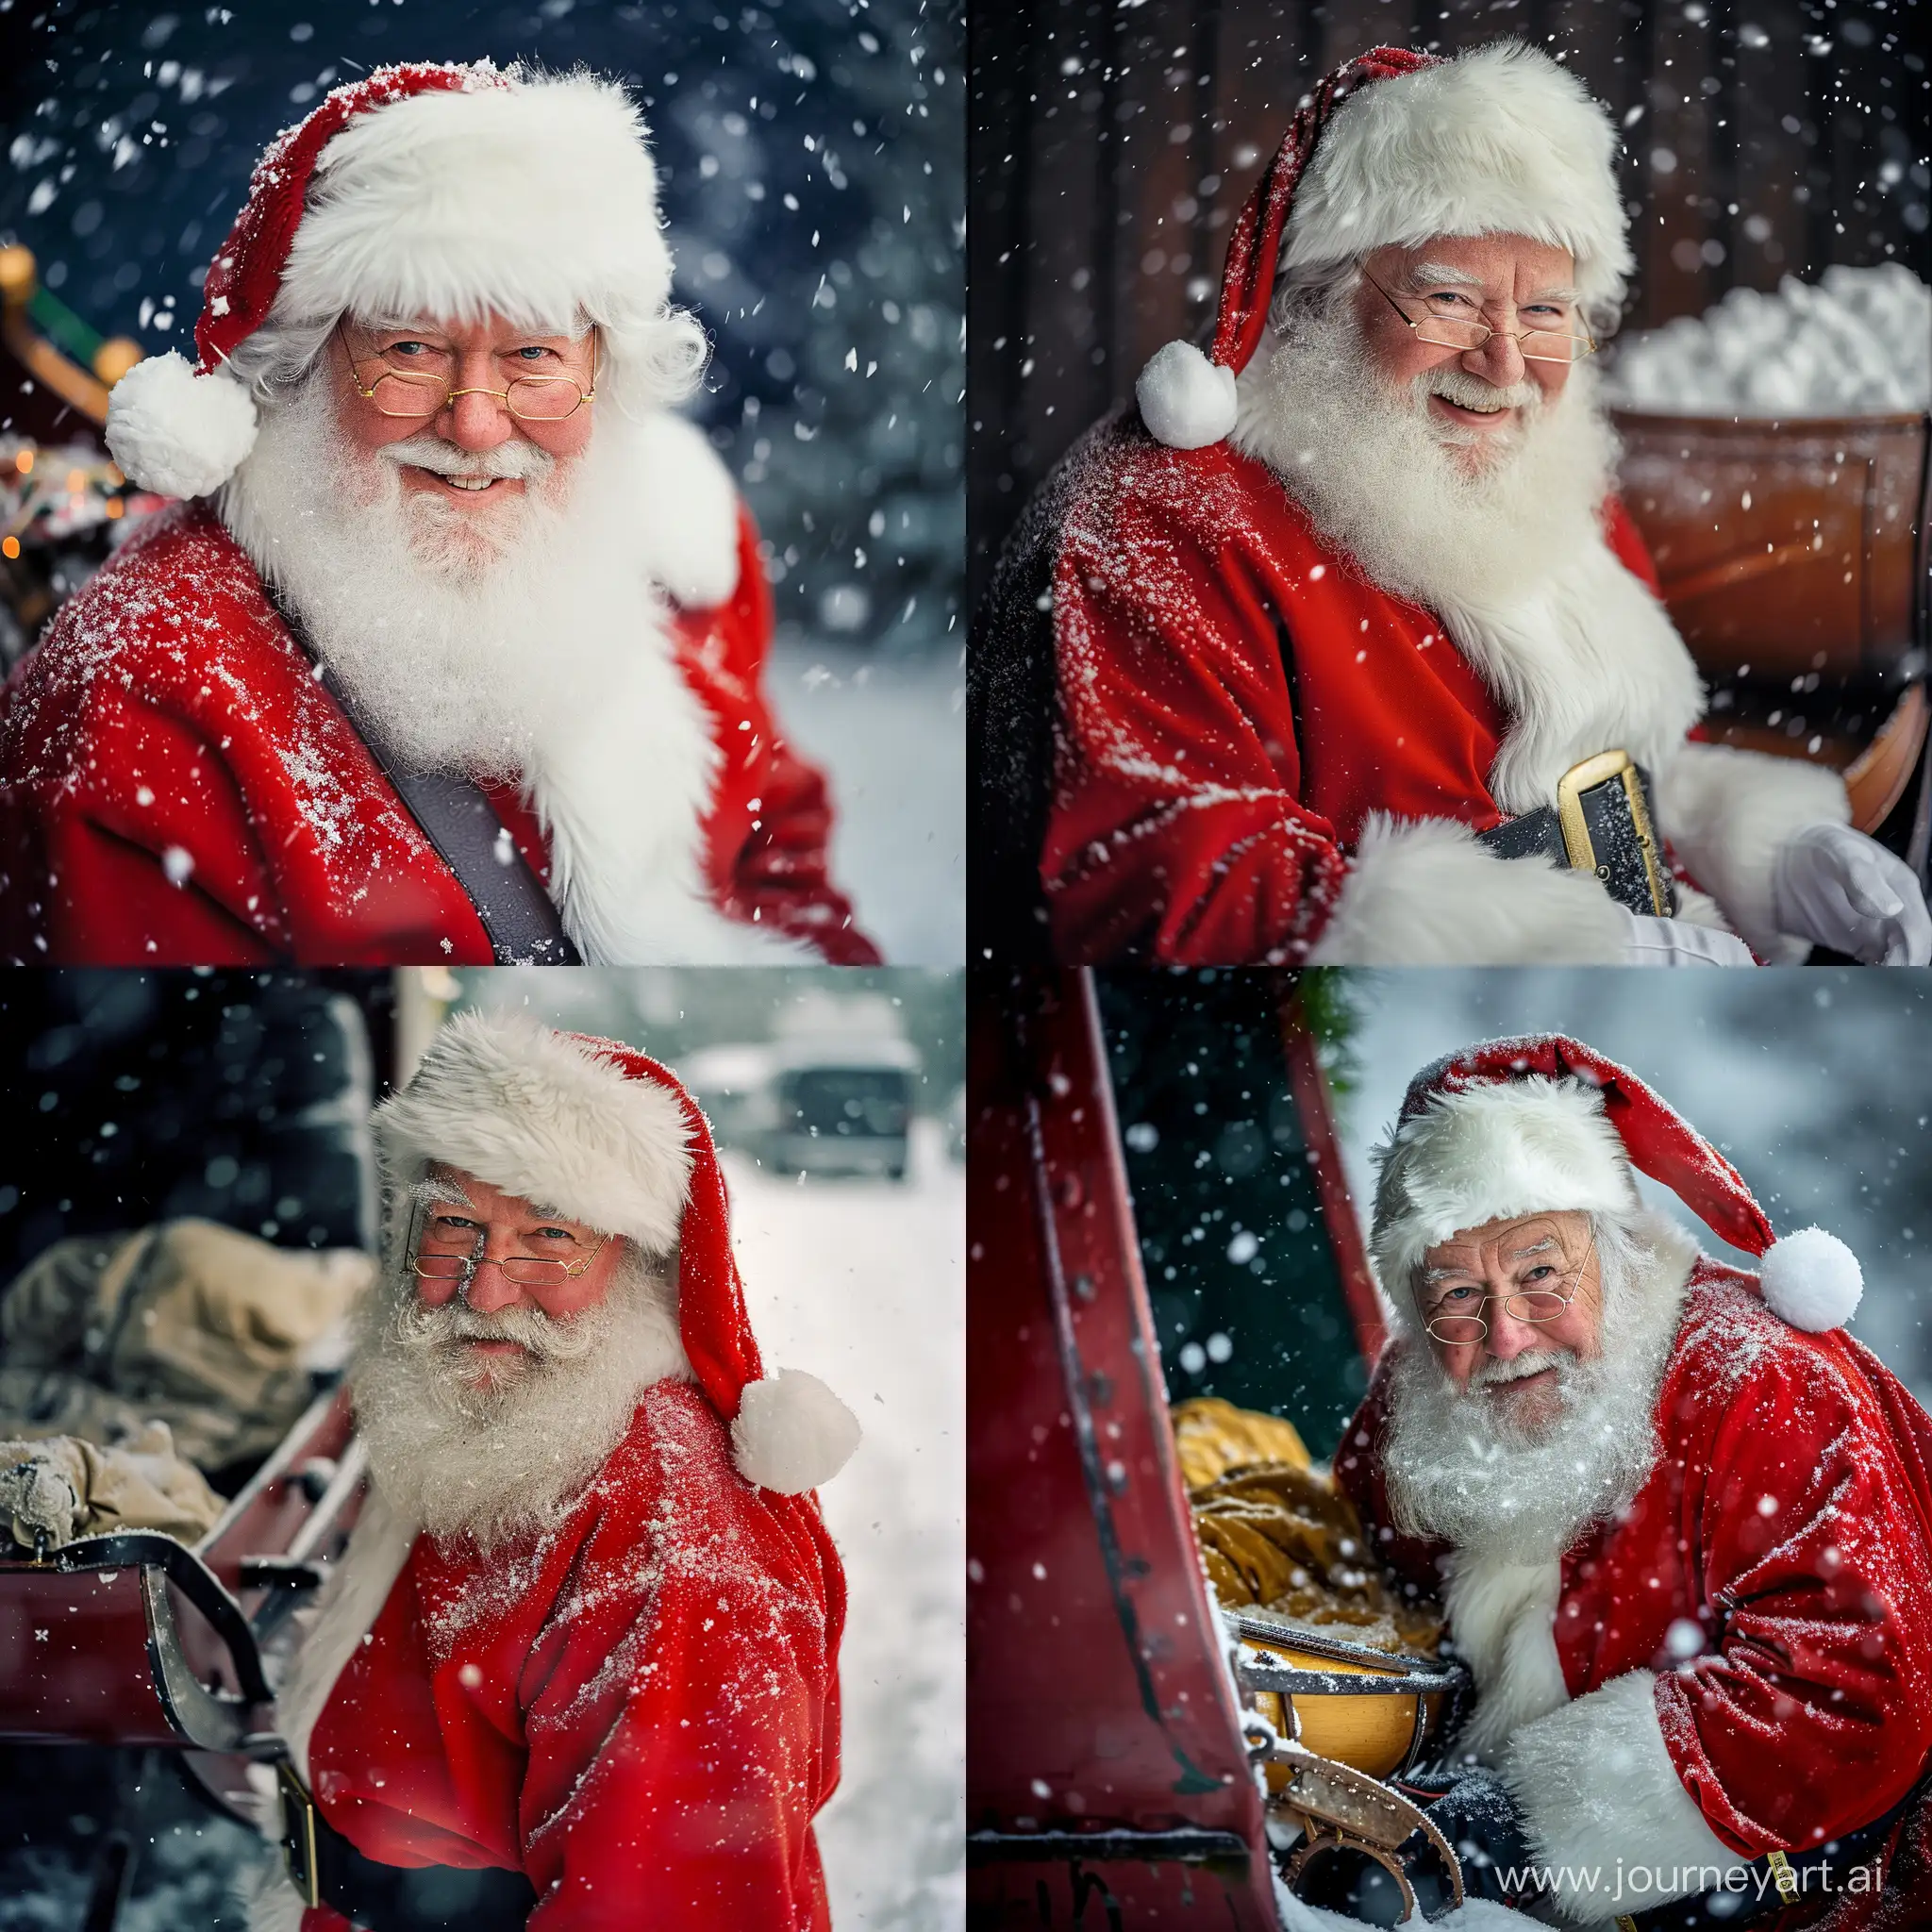 Enchanting-Snowfall-Capture-Santa-Claus-and-Sleigh